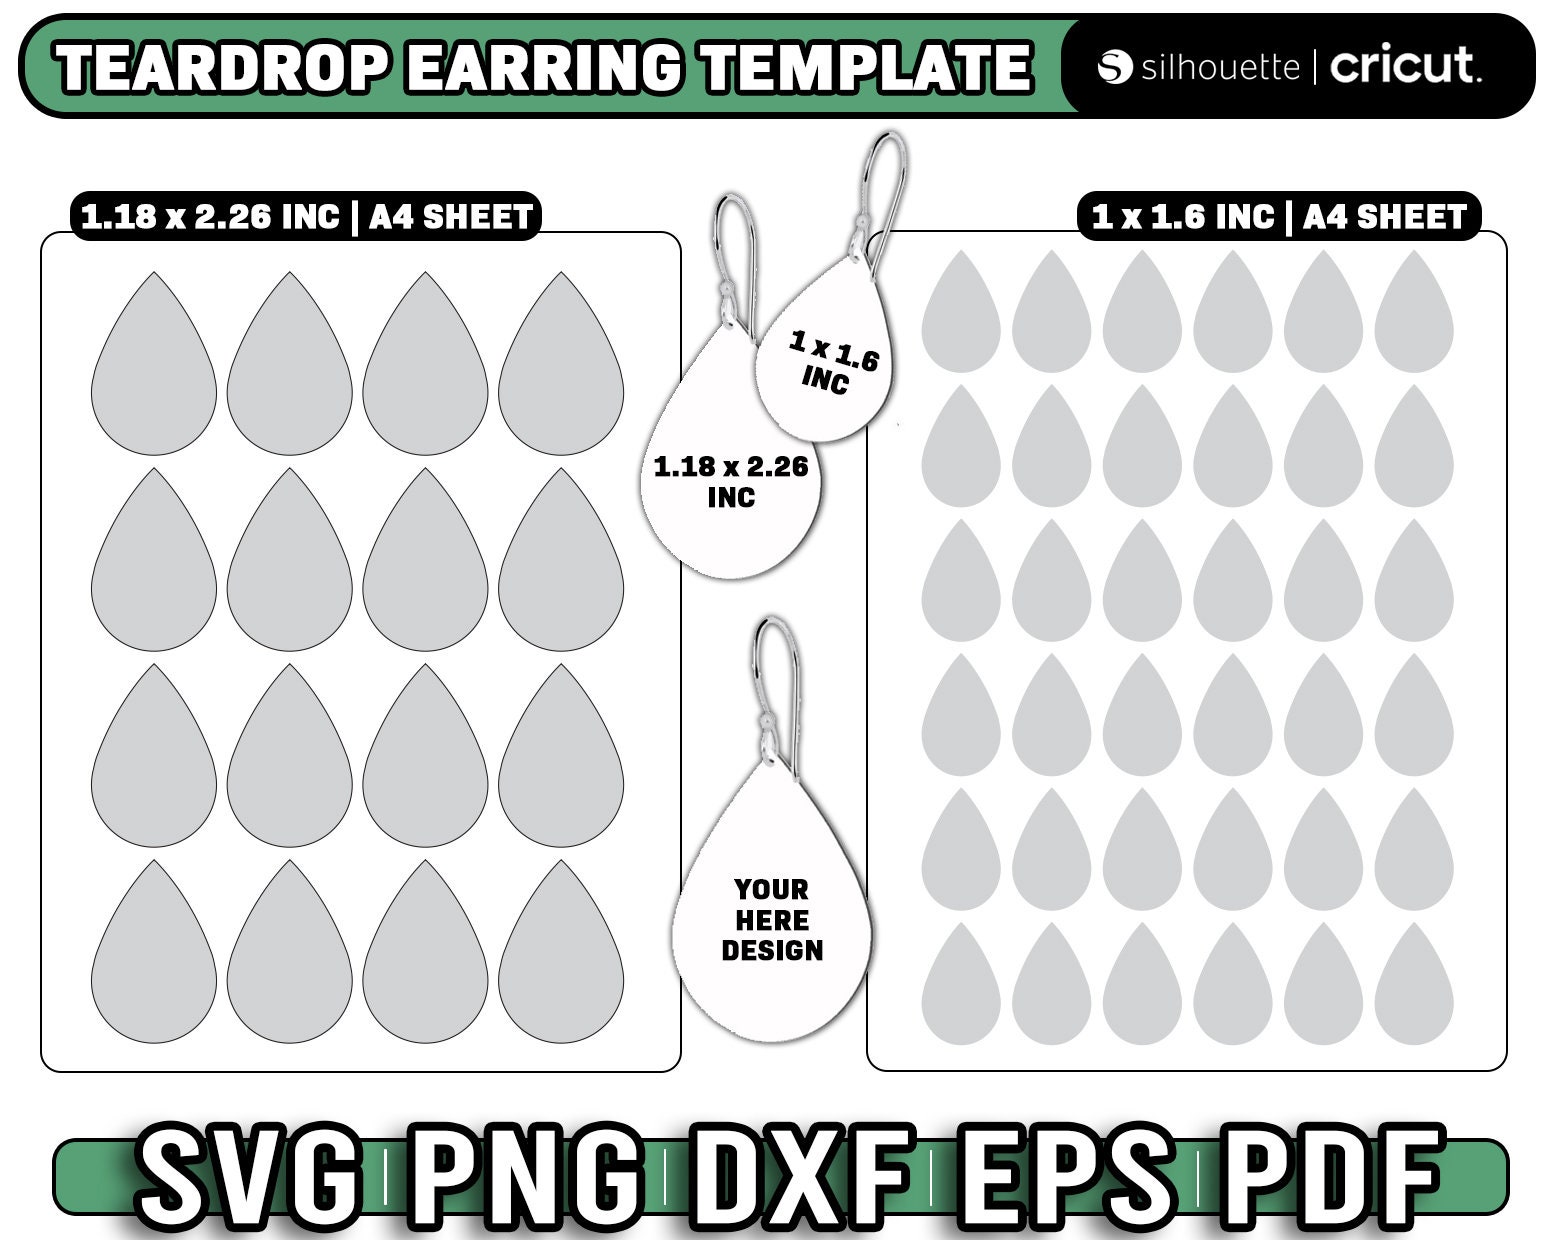 Teardrop Earring Template Sublimation Earring Template 1x1.6 - Etsy